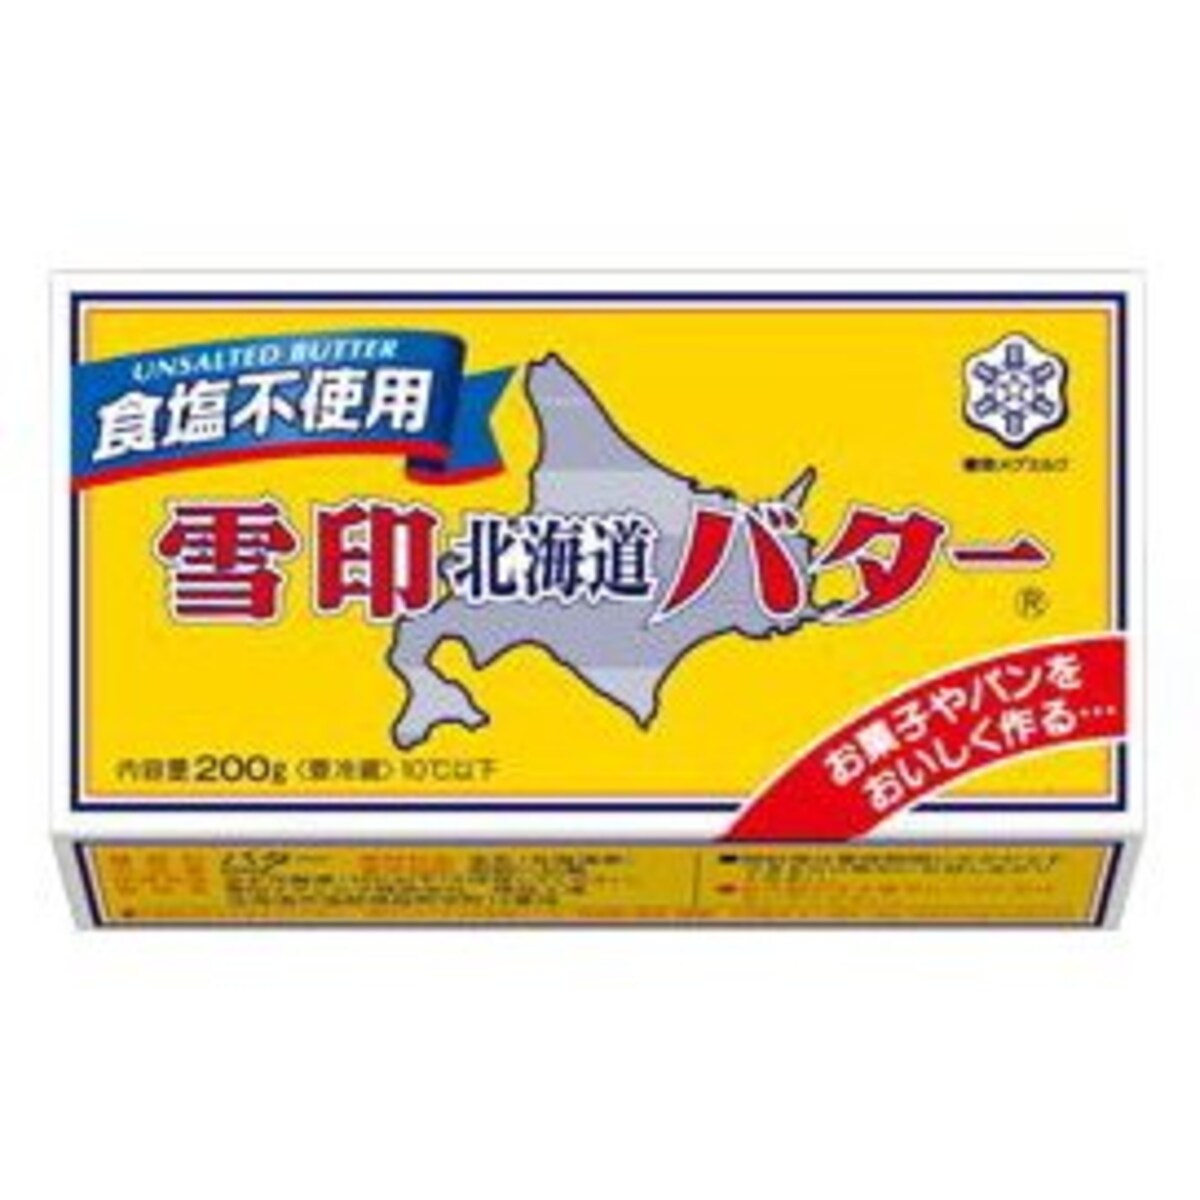 北海道バター食塩不使用 200g